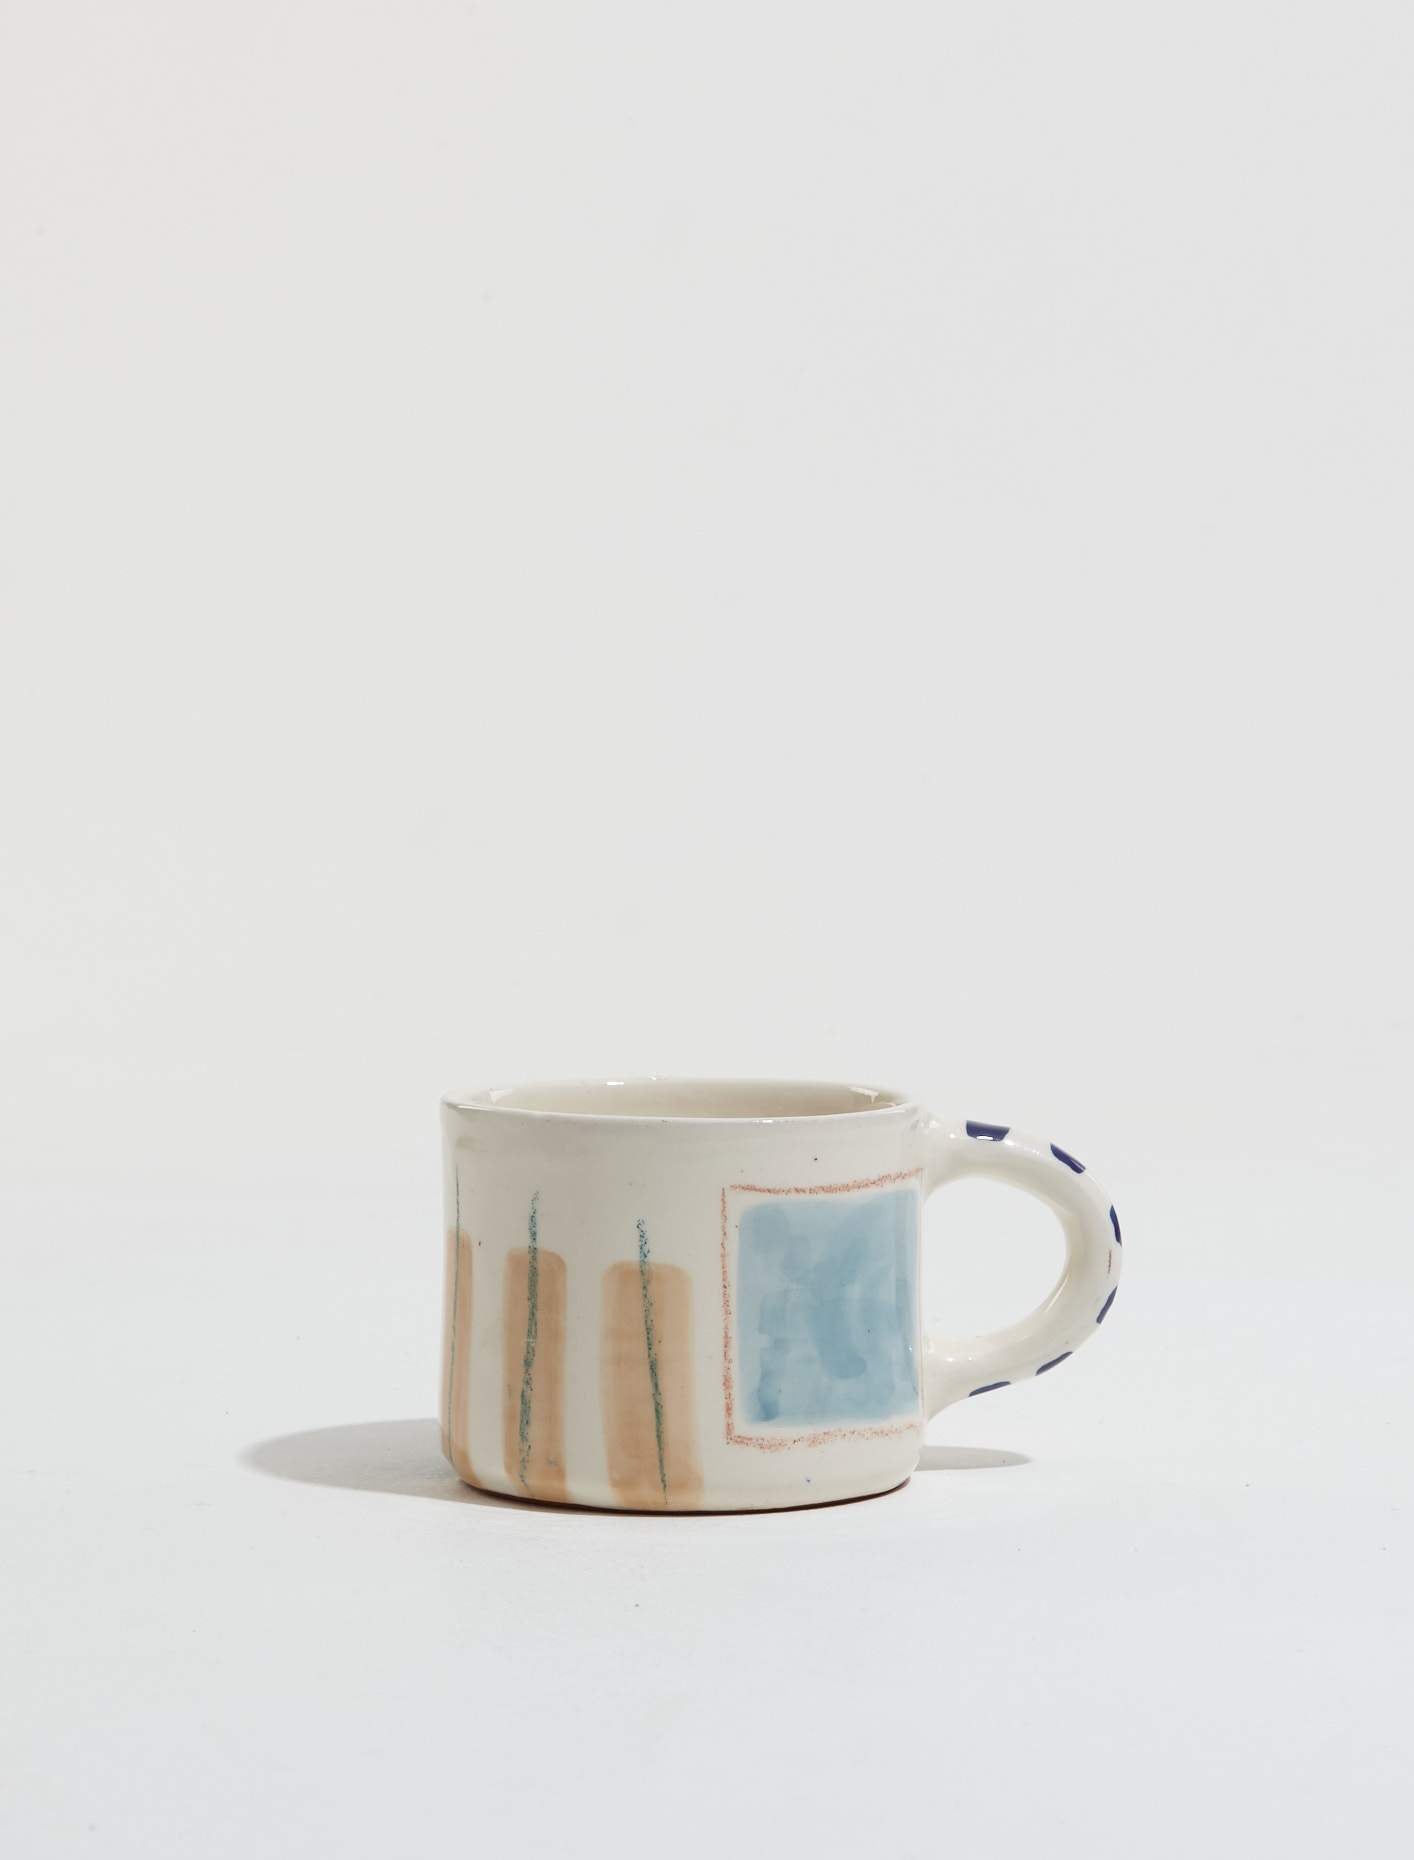 Handpainted Mug "Love Mug Blue Window"